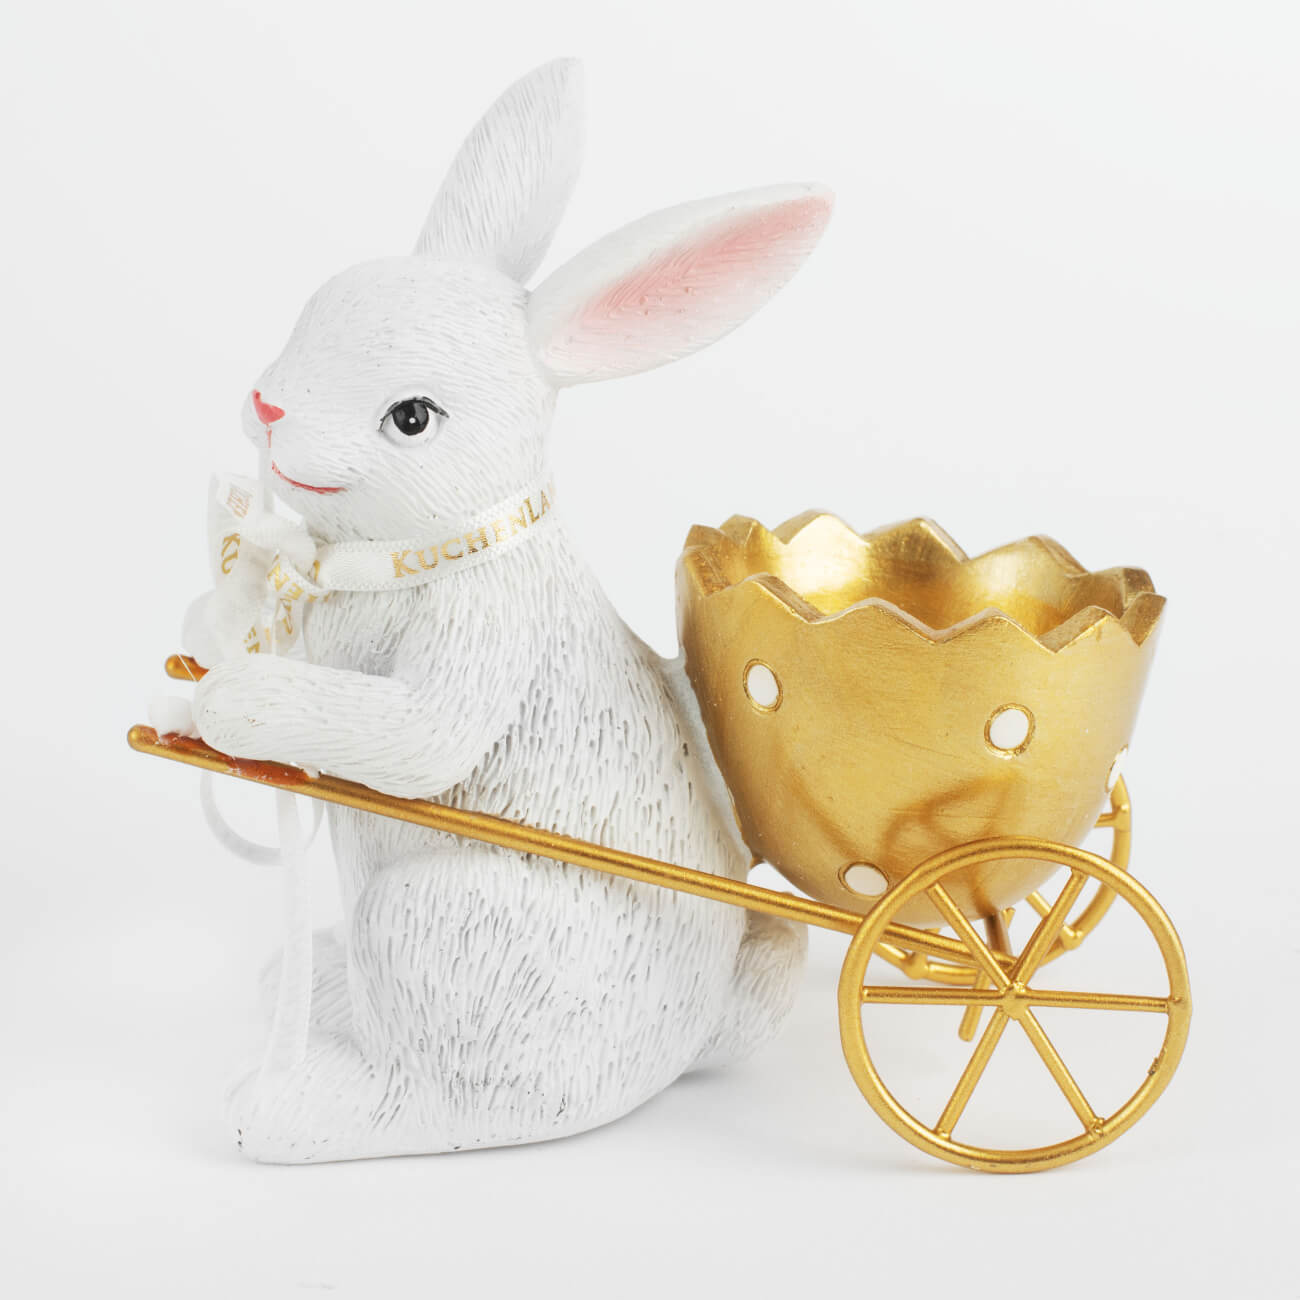 Подставка для яйца, 12 см, полирезин, бело-золотистая, Кролик с тележкой, Easter gold подставка под телефон кролик рич бронза